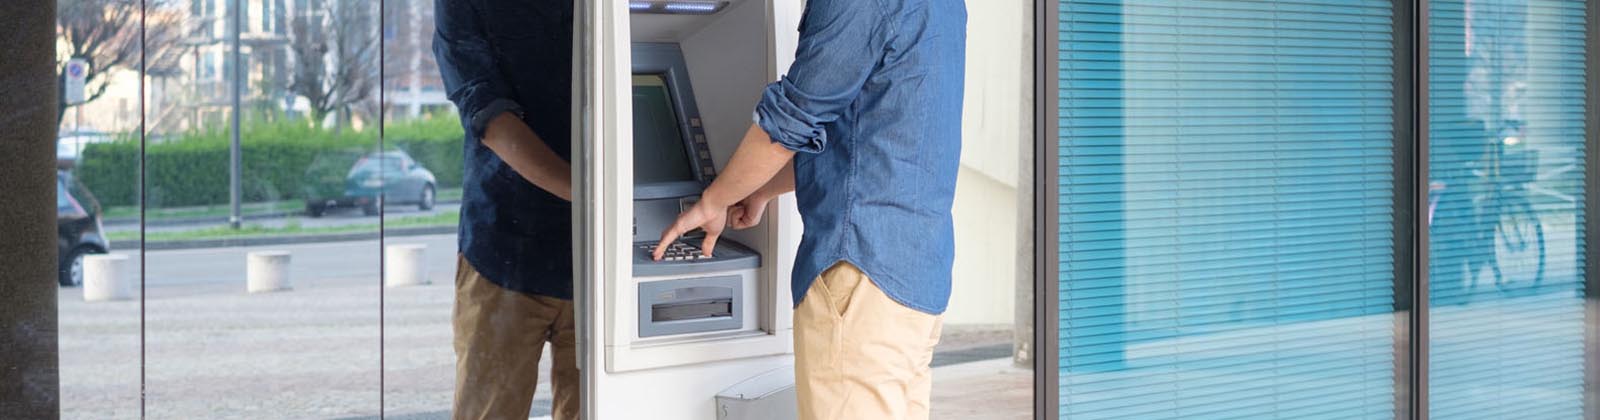 man using an ATM